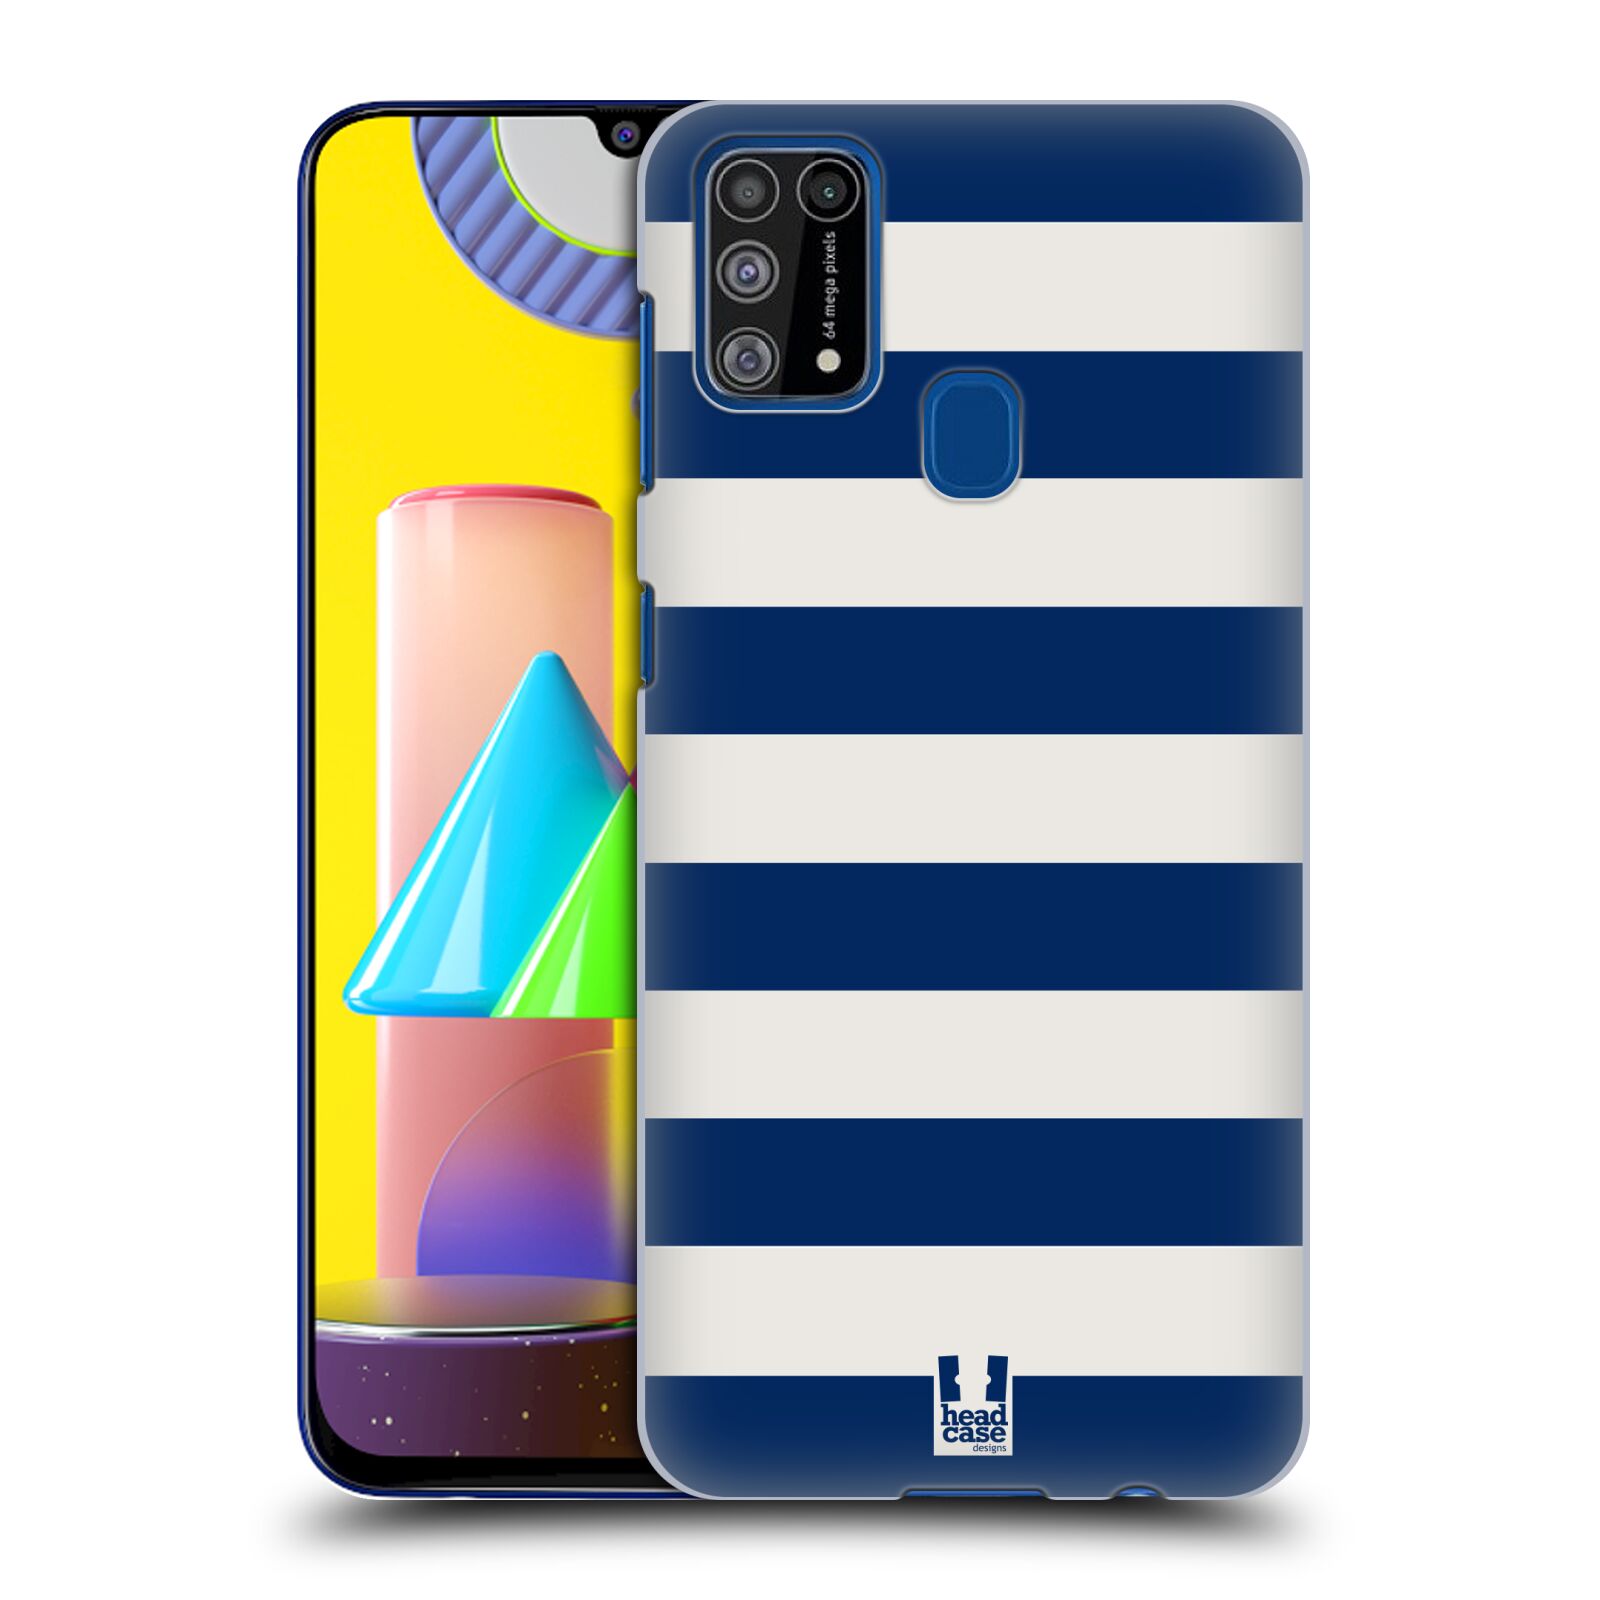 Zadní obal pro mobil Samsung Galaxy M31 - HEAD CASE - Námořnické pruhy modrá a bílá